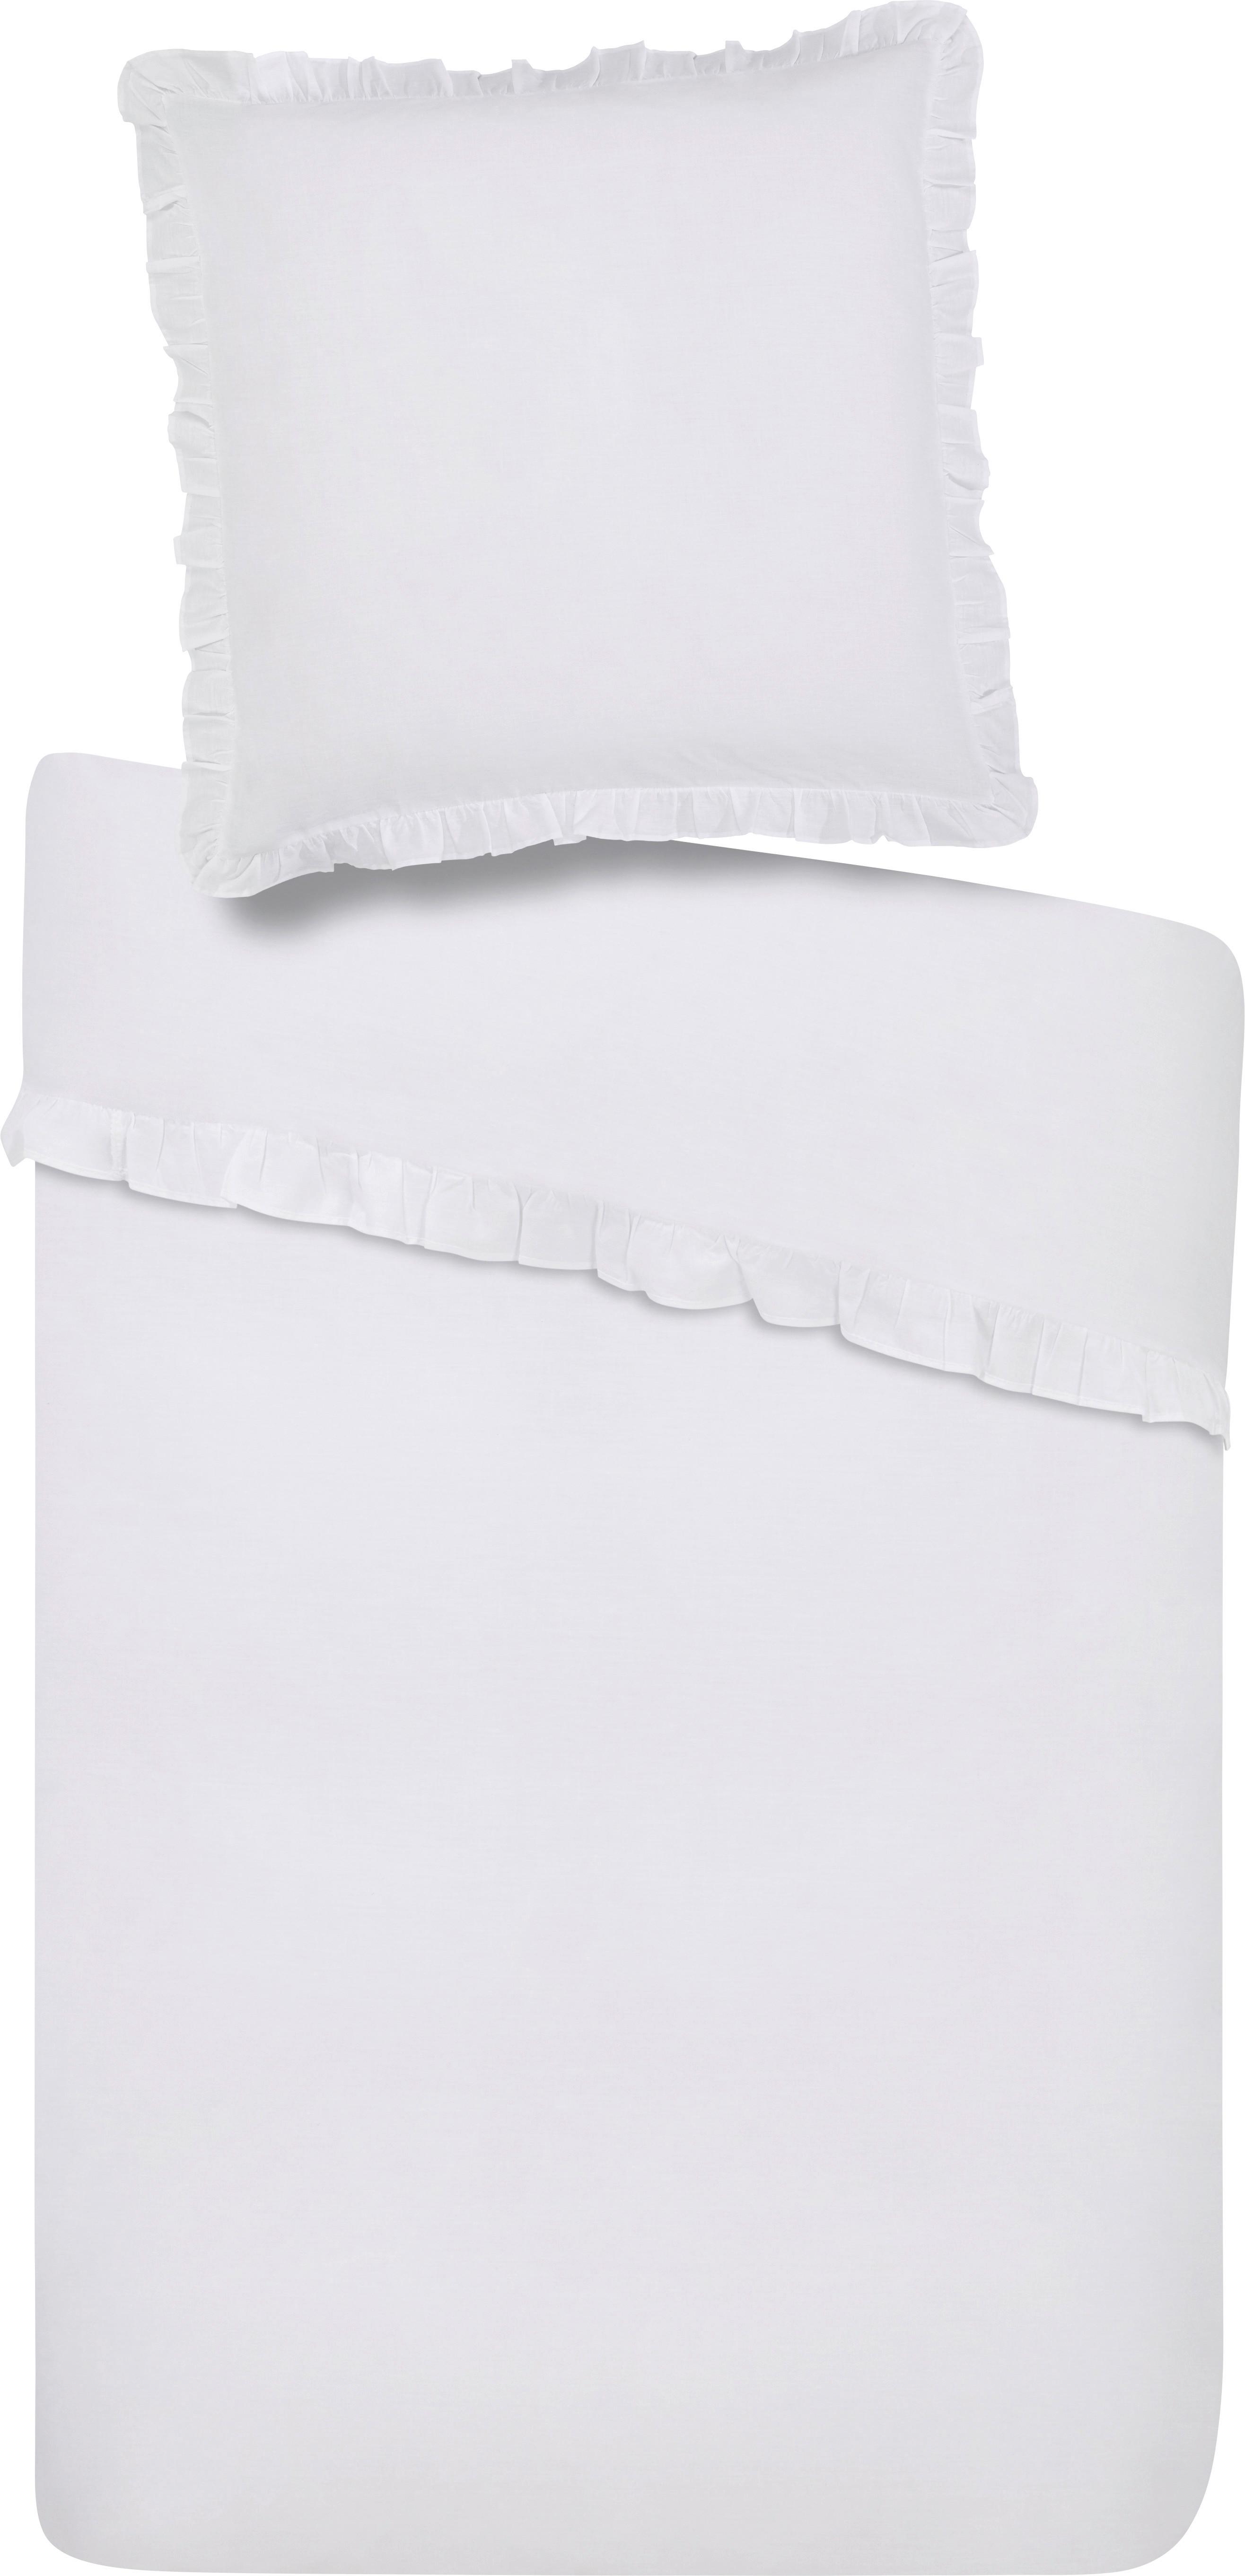 Bettwäsche Rüschen in Weiß ca. 135x200cm - Weiß, ROMANTIK / LANDHAUS, Textil (135/200cm) - Zandiara